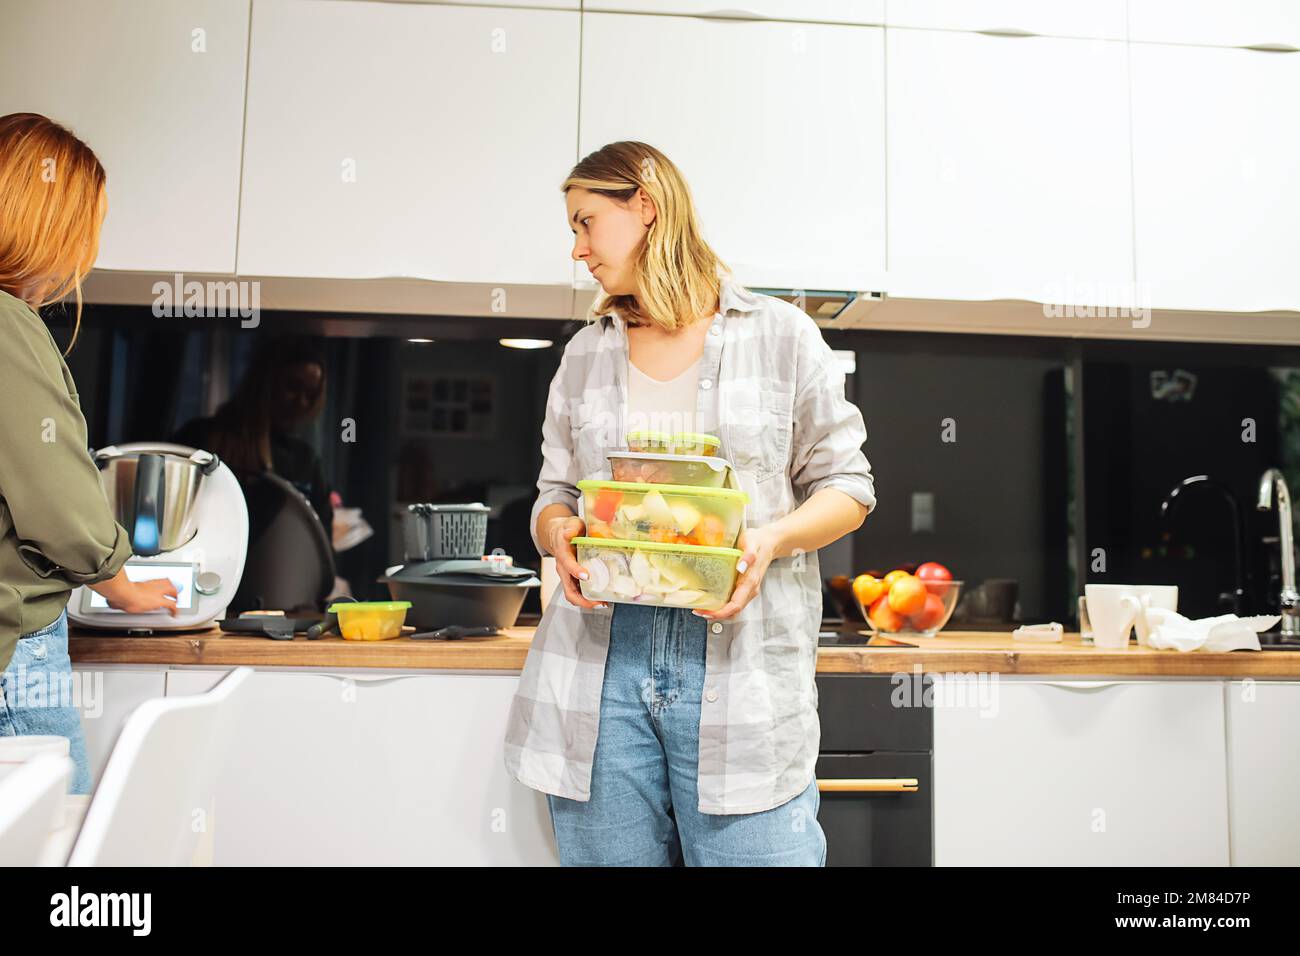 Une femme tient des boîtes en plastique avec des aliments et regarde les appareils électroniques modernes de cuisine. Les amis cuisinent ensemble à la maison. Banque D'Images